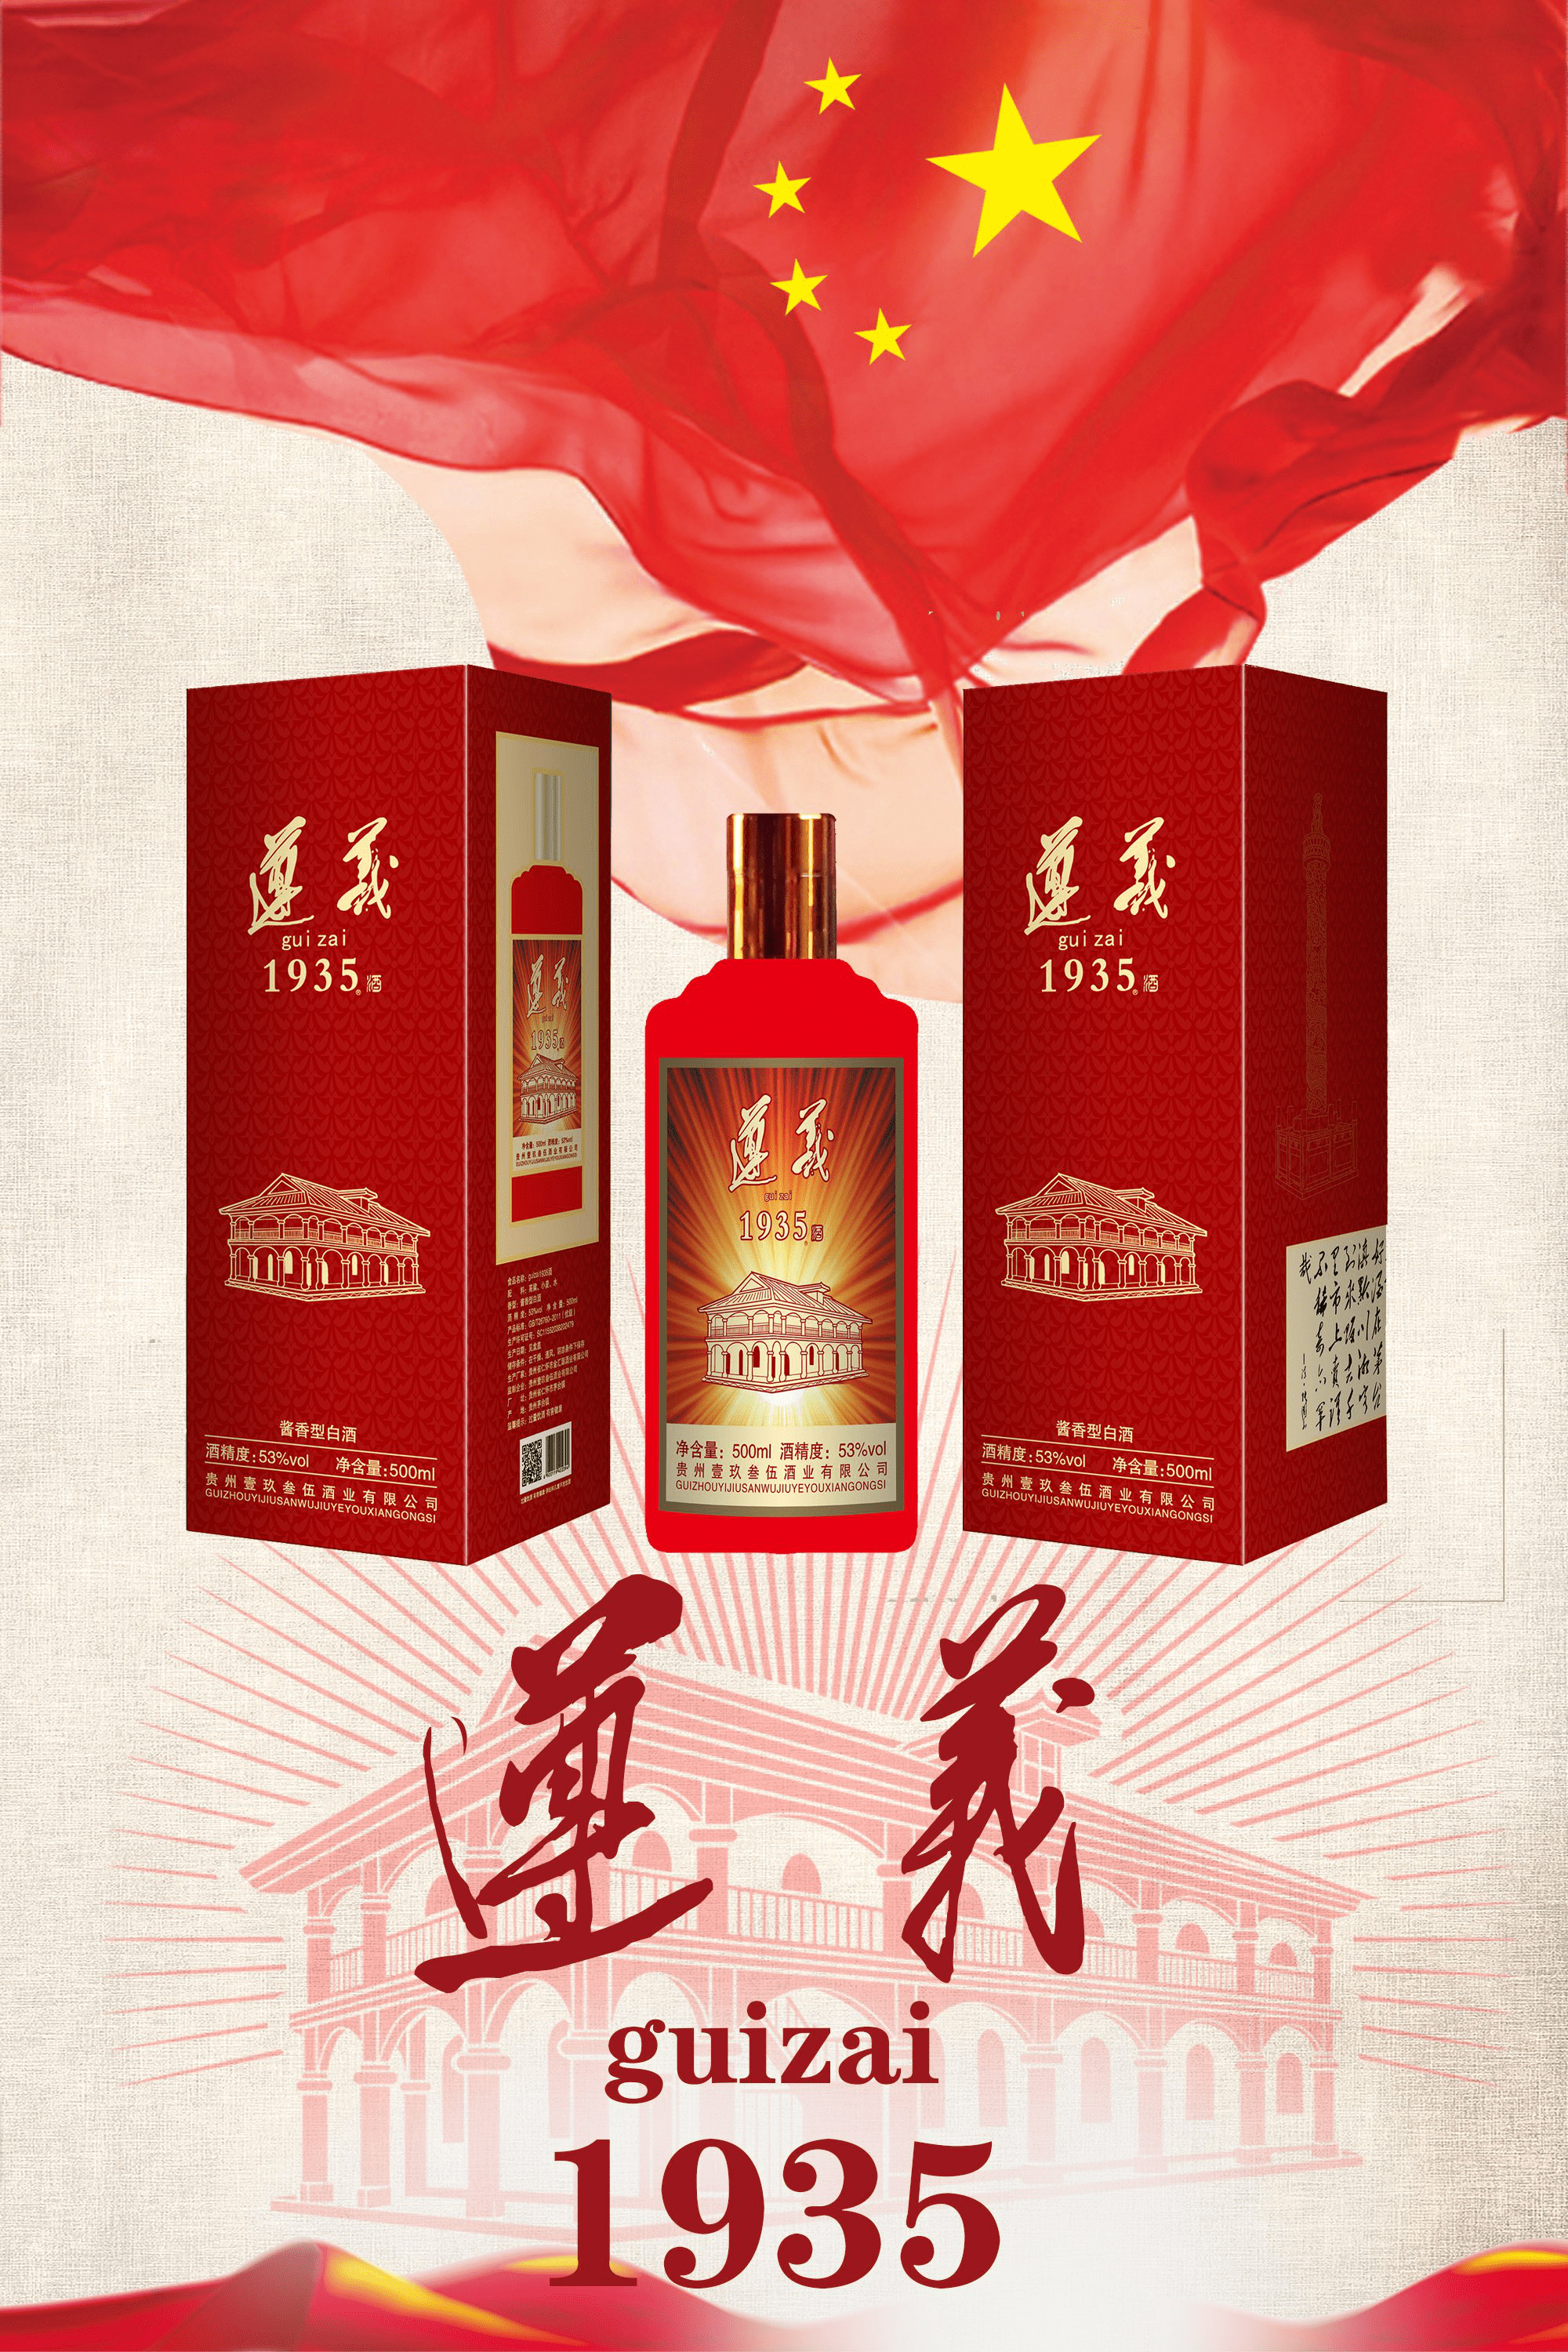 贵州壹玖叁伍酒业有限公司 遵义guizai1935英文版酒的声明